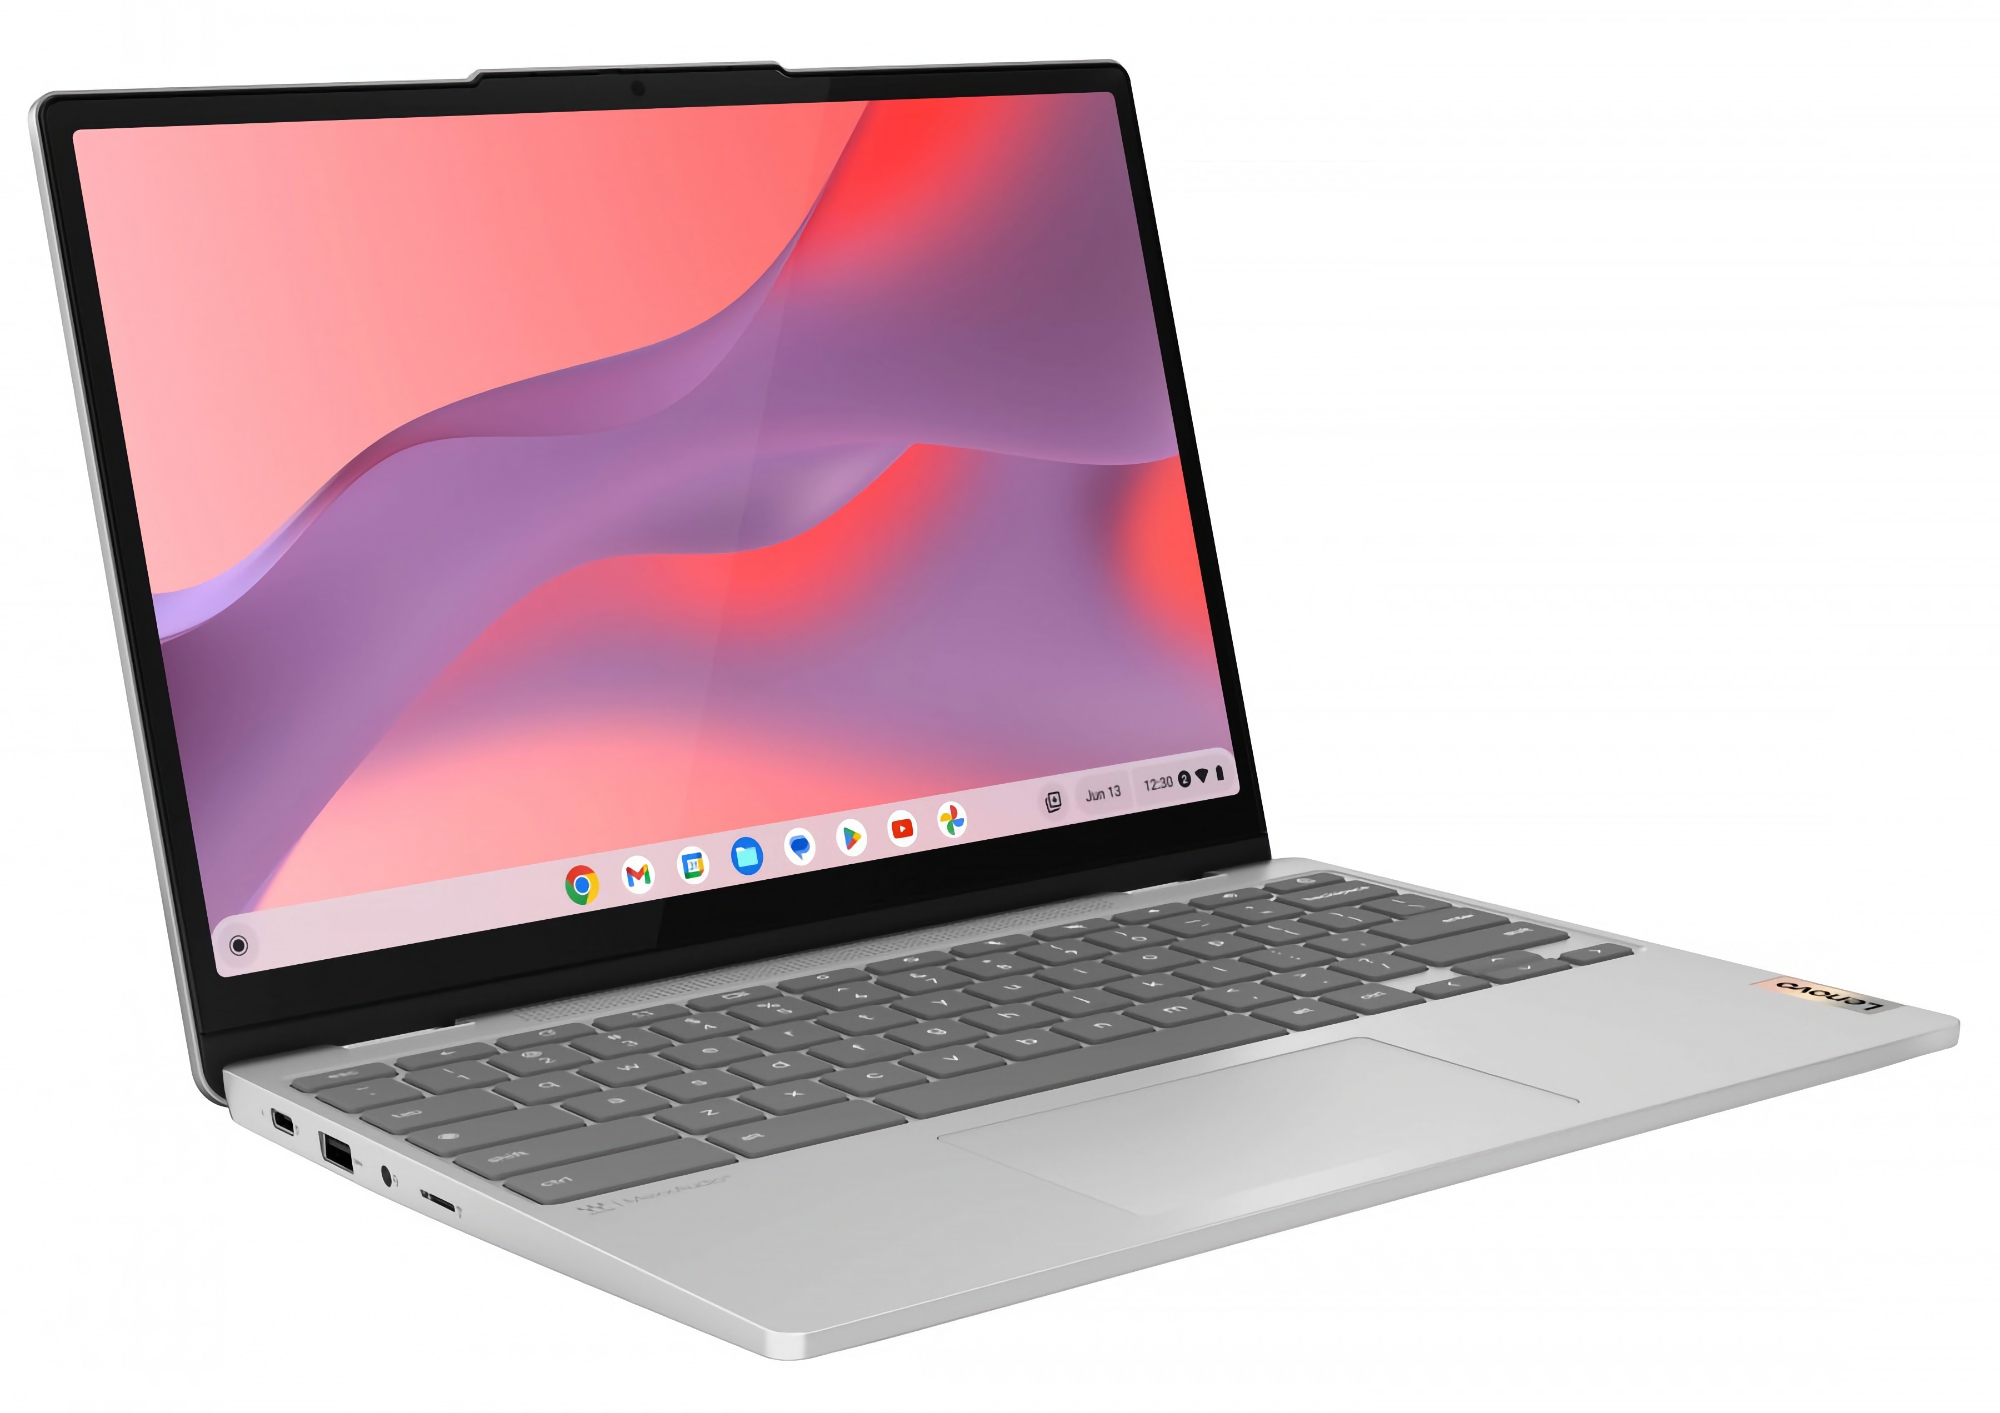 Lenovo IdeaPad Flex 3i: Laptop Chrome OS con display da 12,2 pollici, processore Intel, grafica NVIDIA, 4/8 GB di RAM e prezzo a partire da 350 dollari.